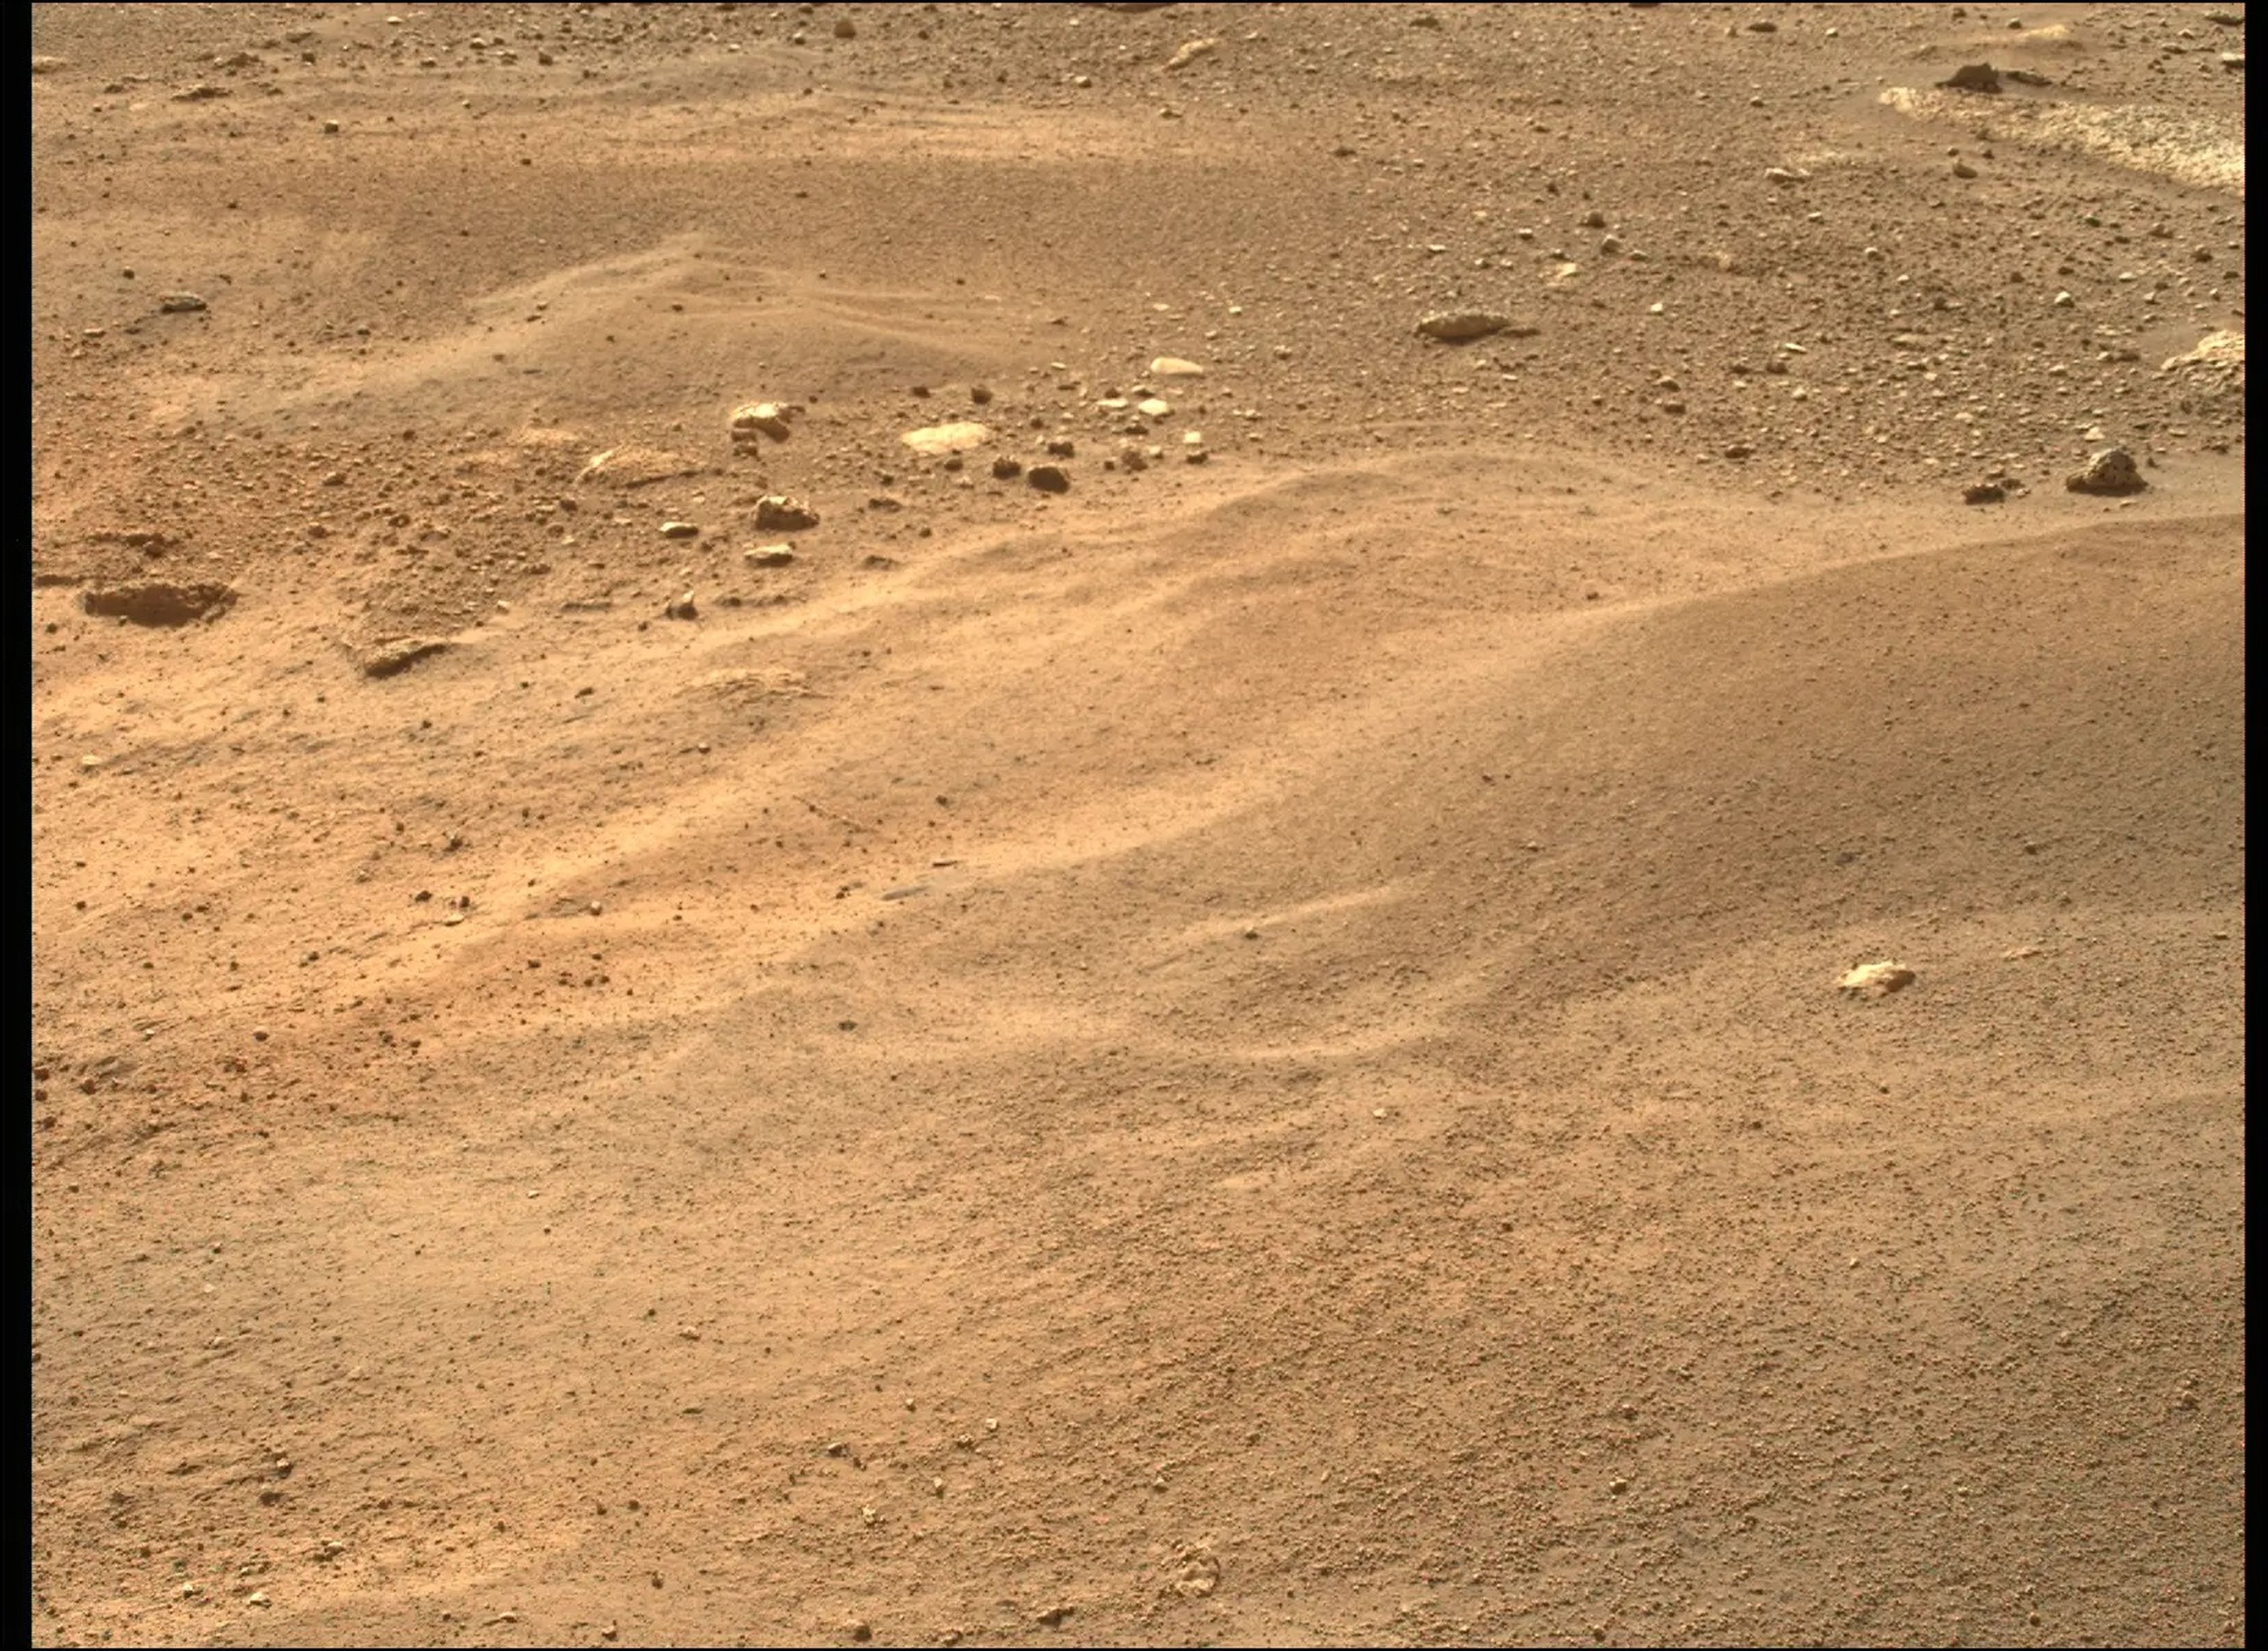 El rover Mars Perseverance de la NASA adquirió esta imagen usando una cámara Mastcam-Z, ubicada en lo alto del mástil del rover.